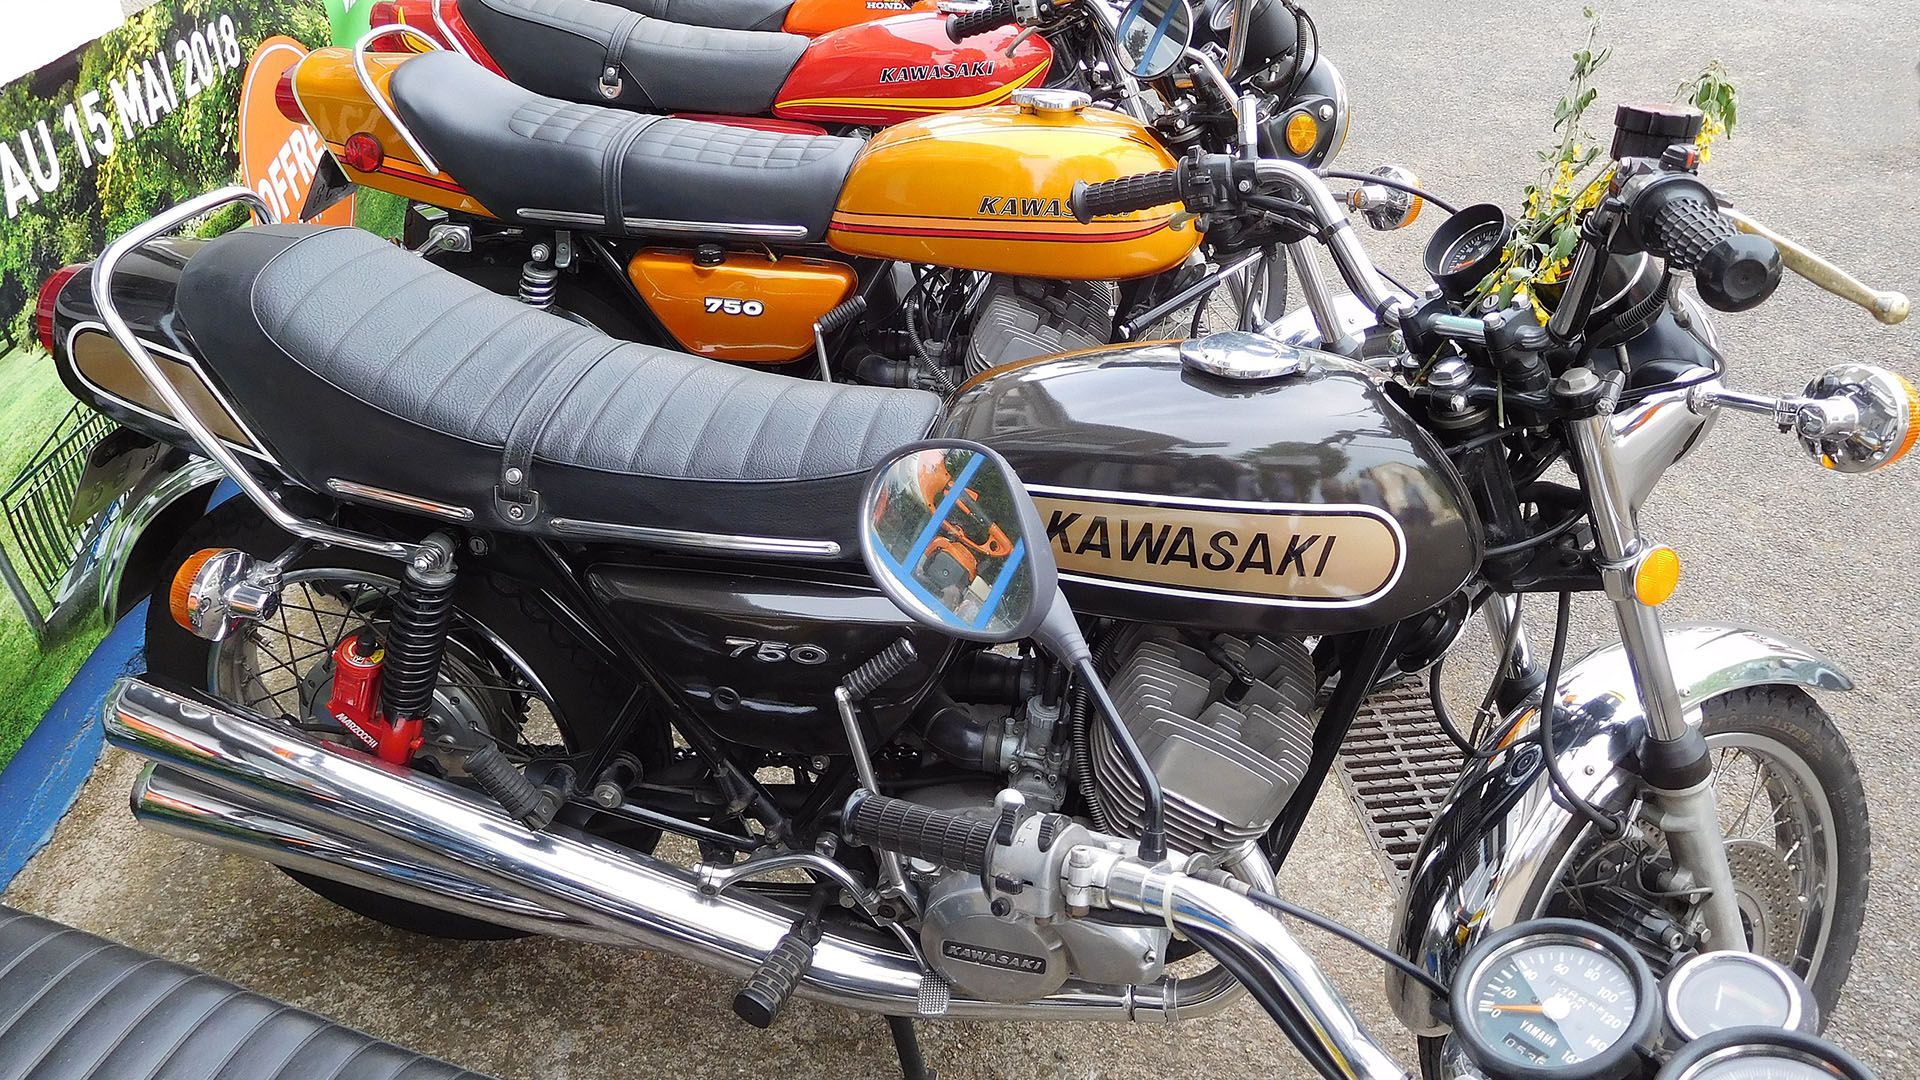 A Kawasaki H2 Mach IV Motorcycle